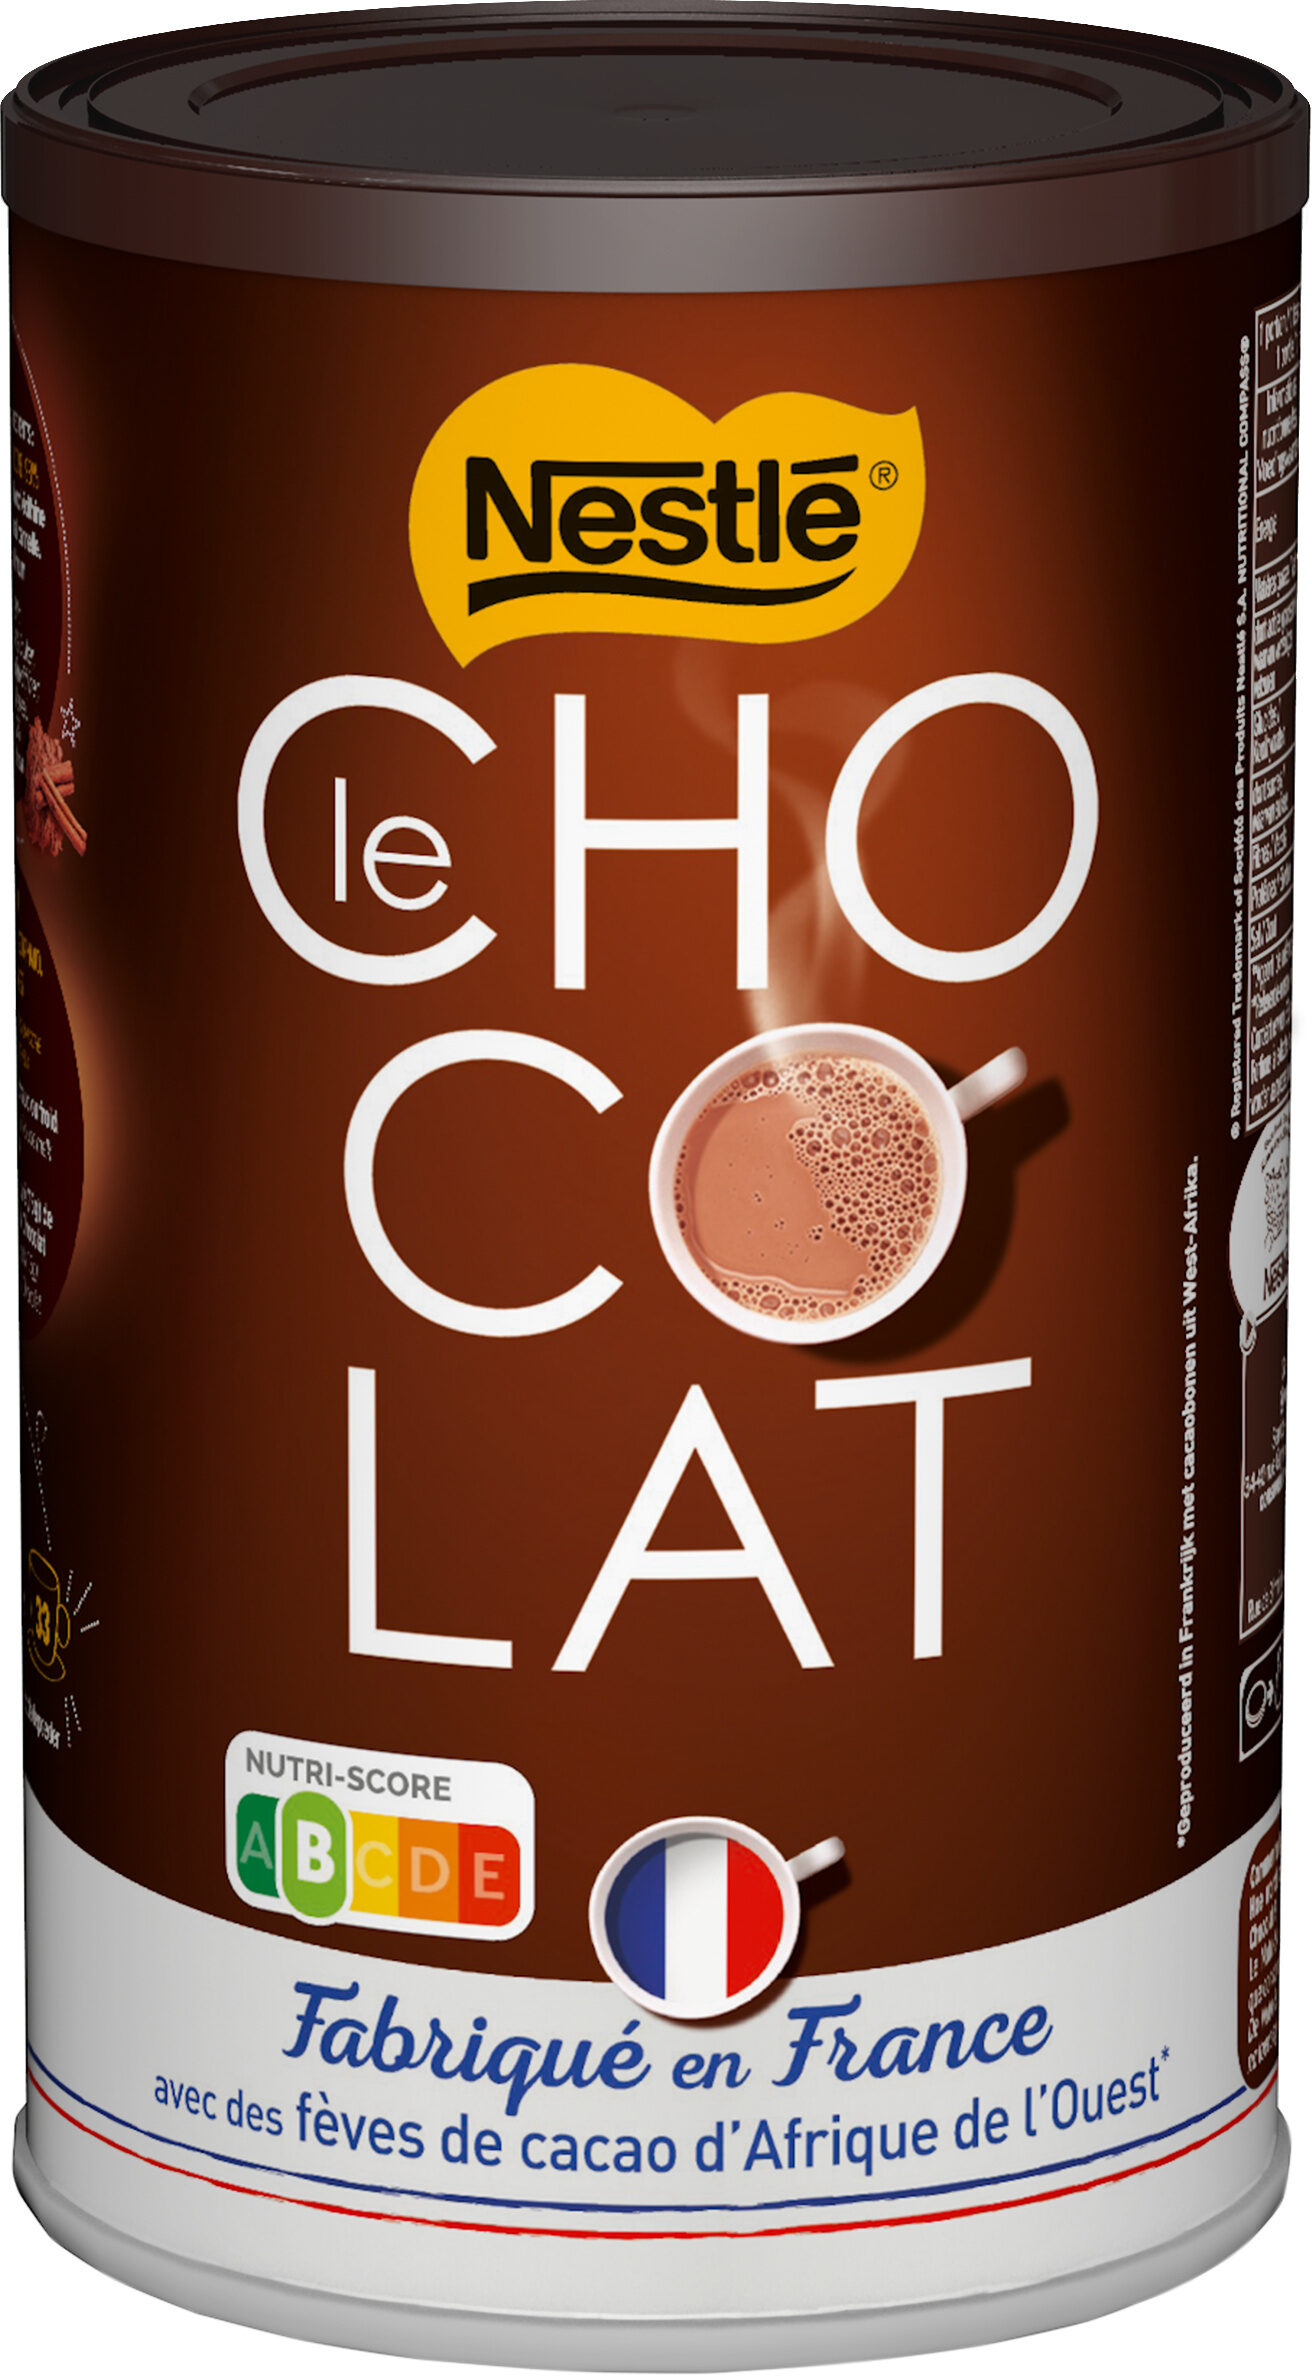 Le Choco - Produit